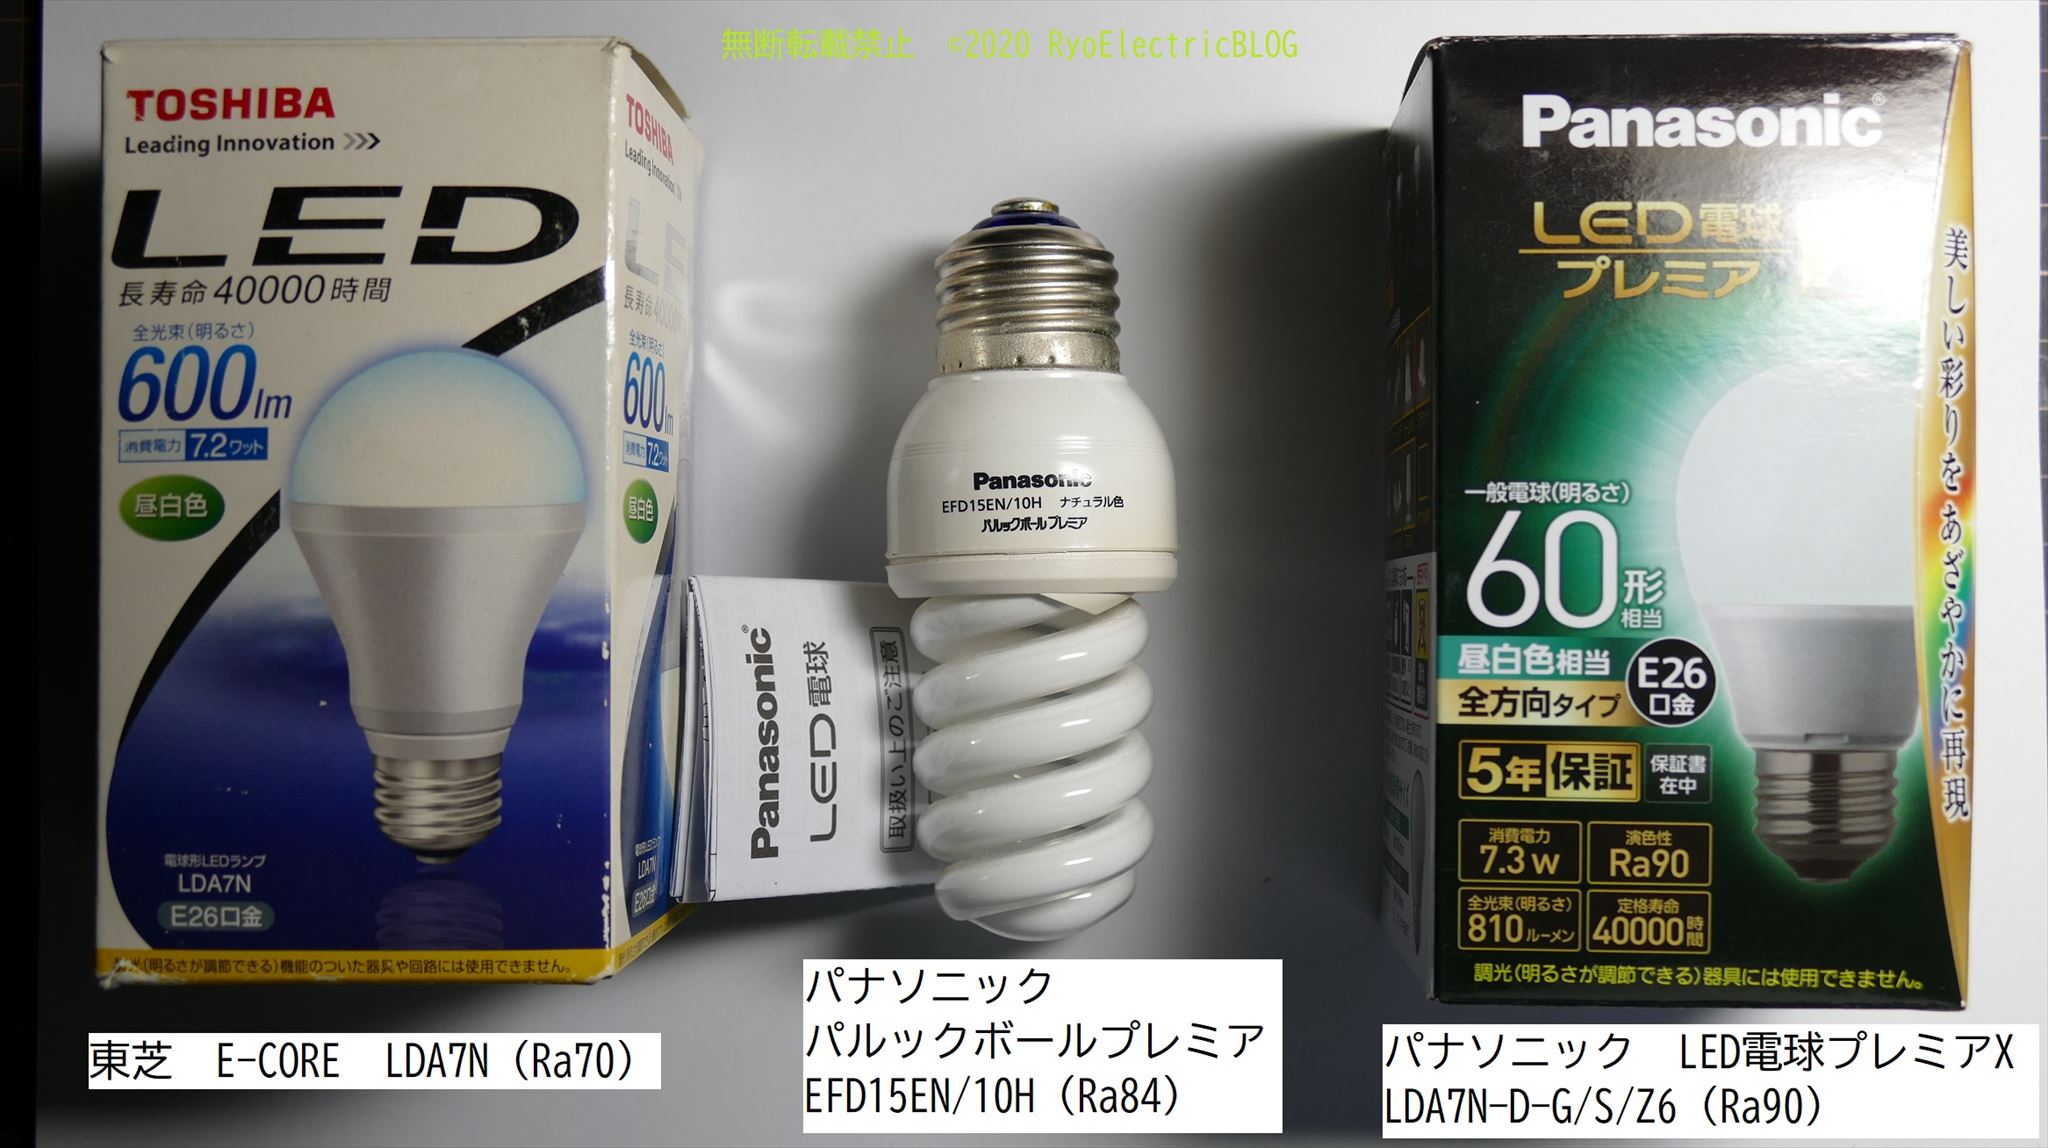 分解] パナソニック LED電球プレミアX LDA7N-D-G/S/Z6 | RyoElectricBLOG